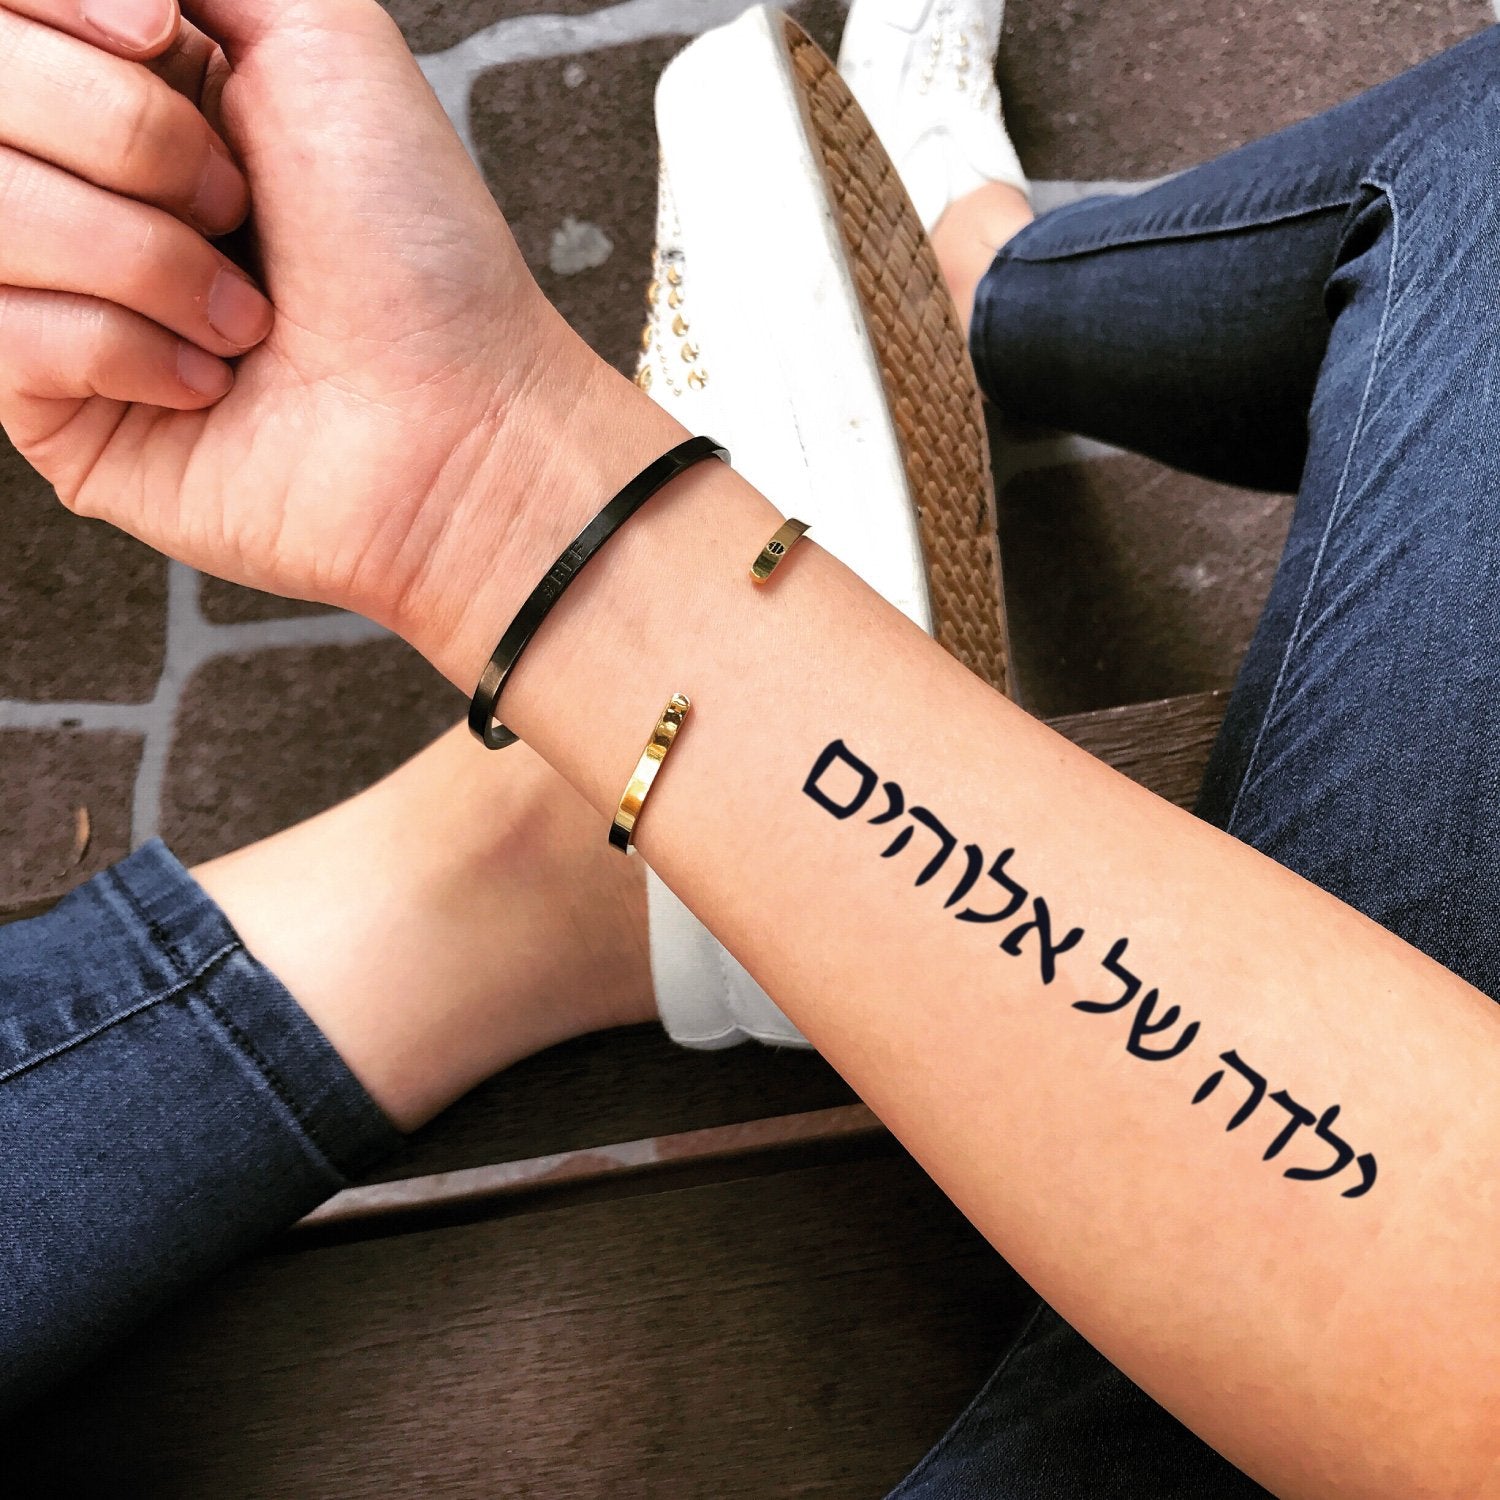 god in hebrew tattoo